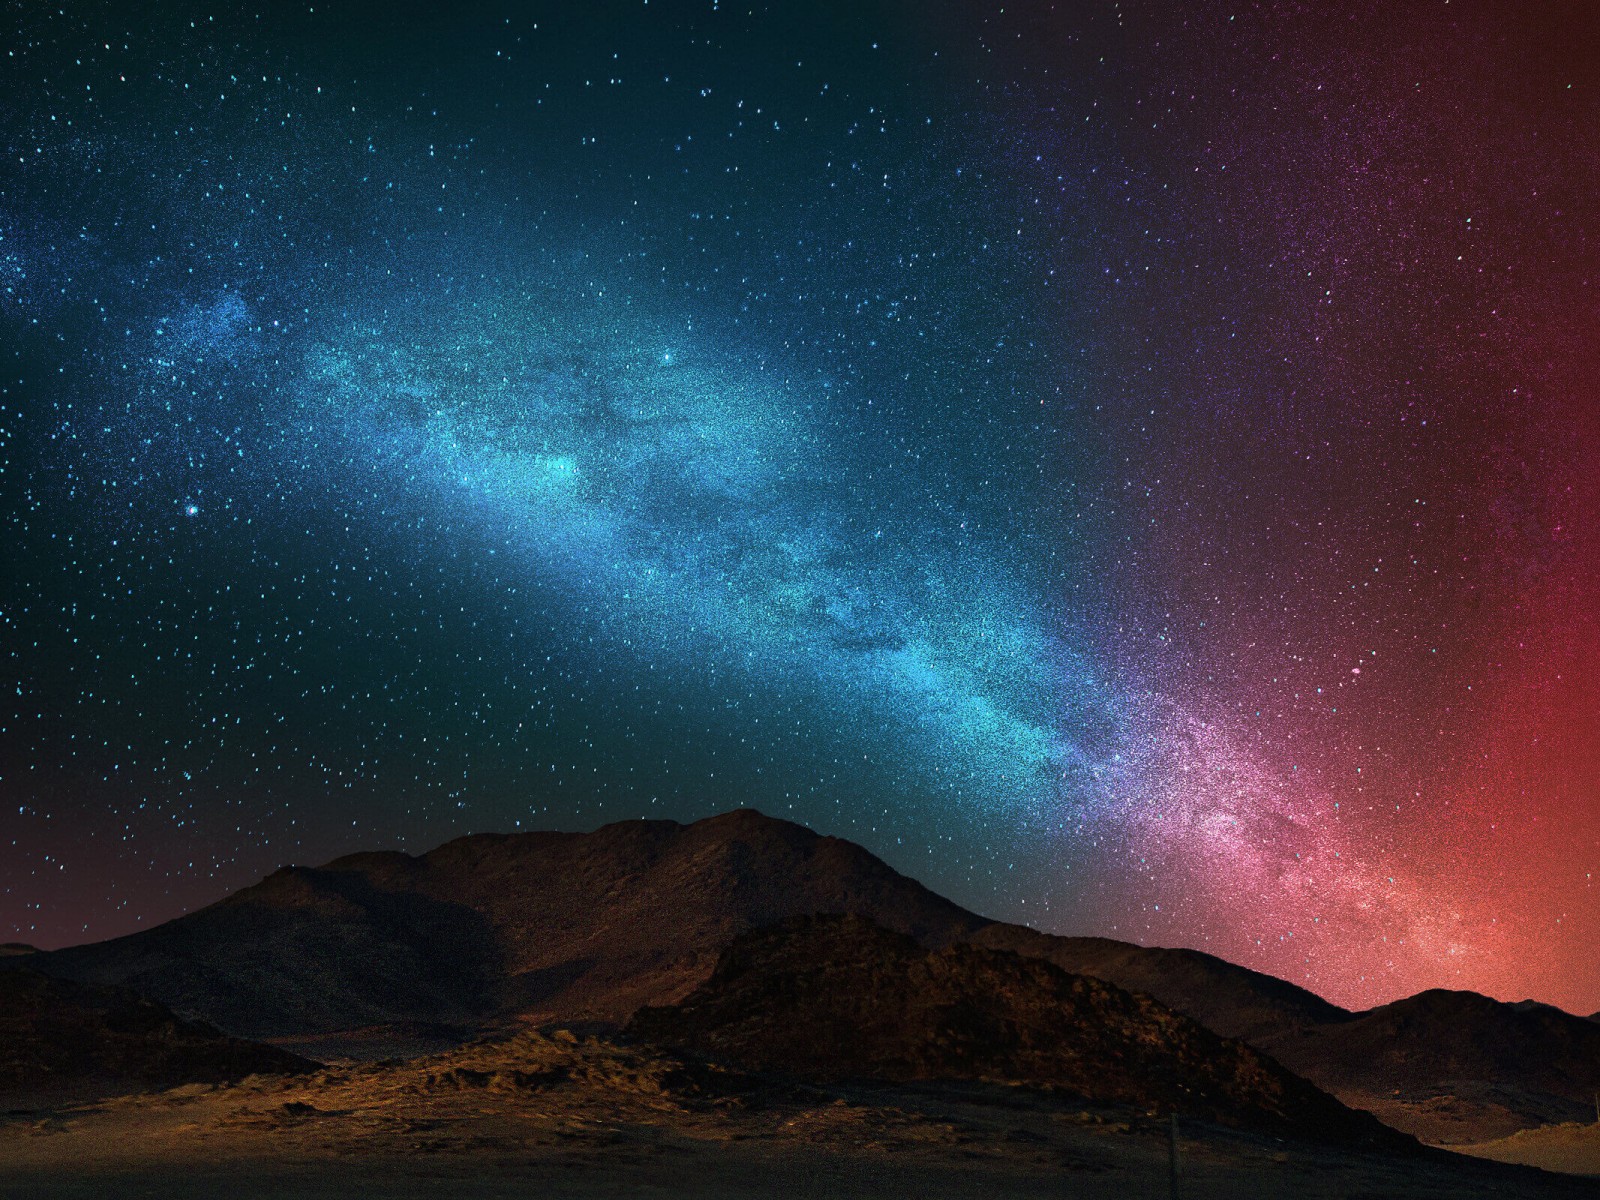 Night Over The Desert HD Wallpaper For X HDwallpaper